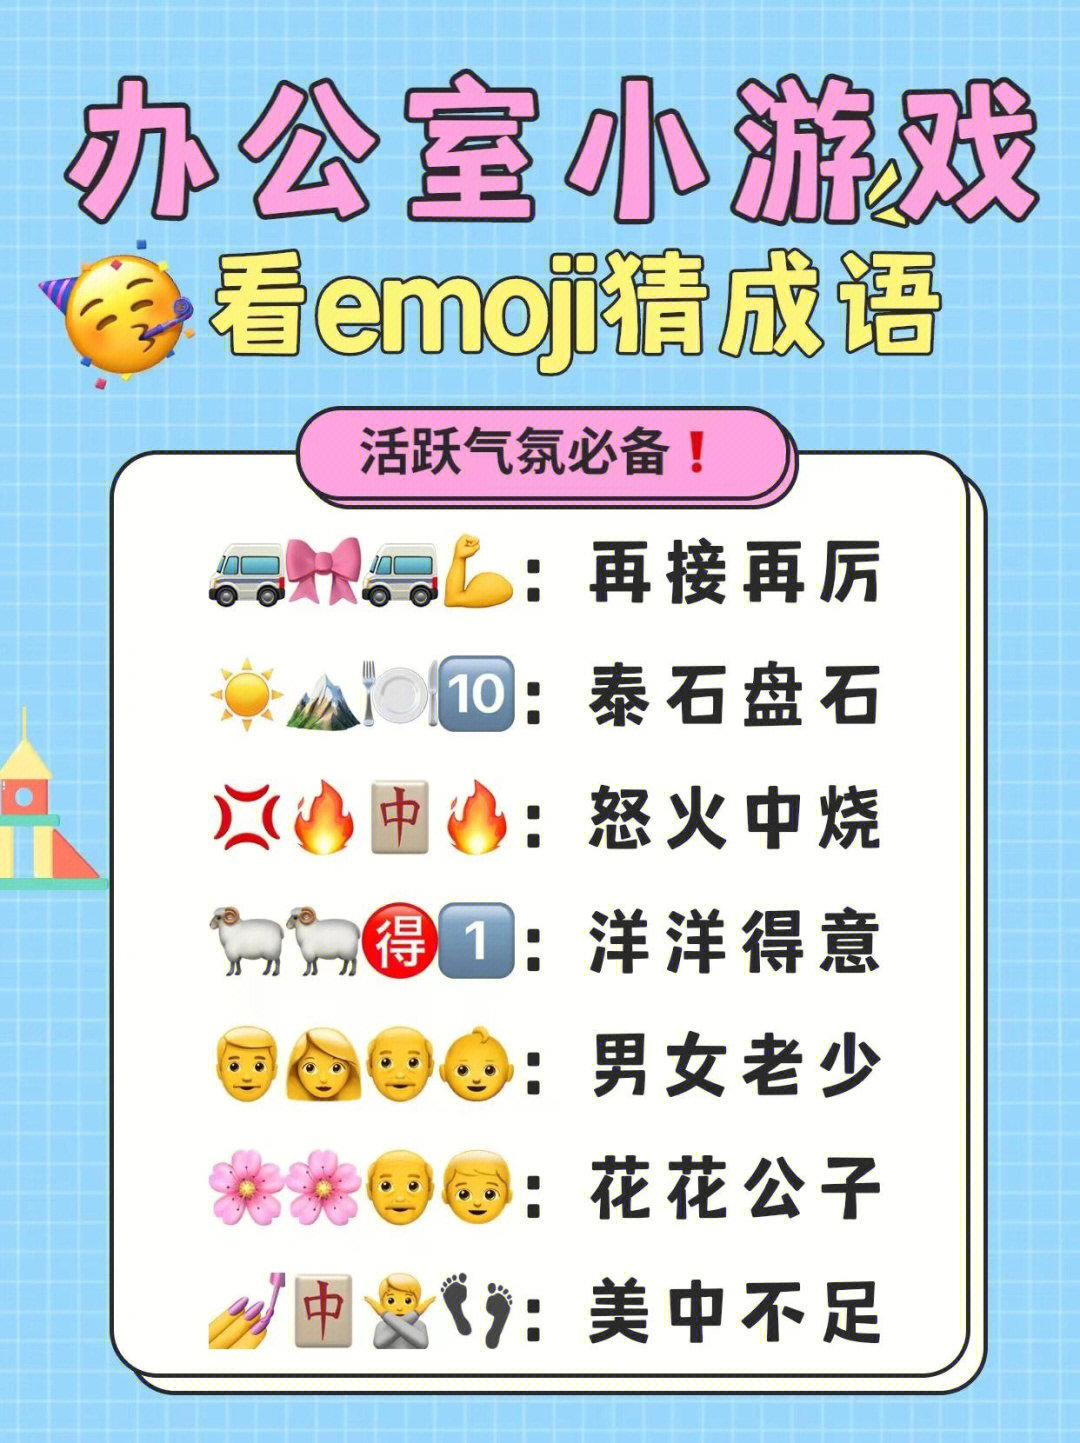 今天我们推荐一个团建小游戏之用emoji表情来猜成语解锁汉字的发源与